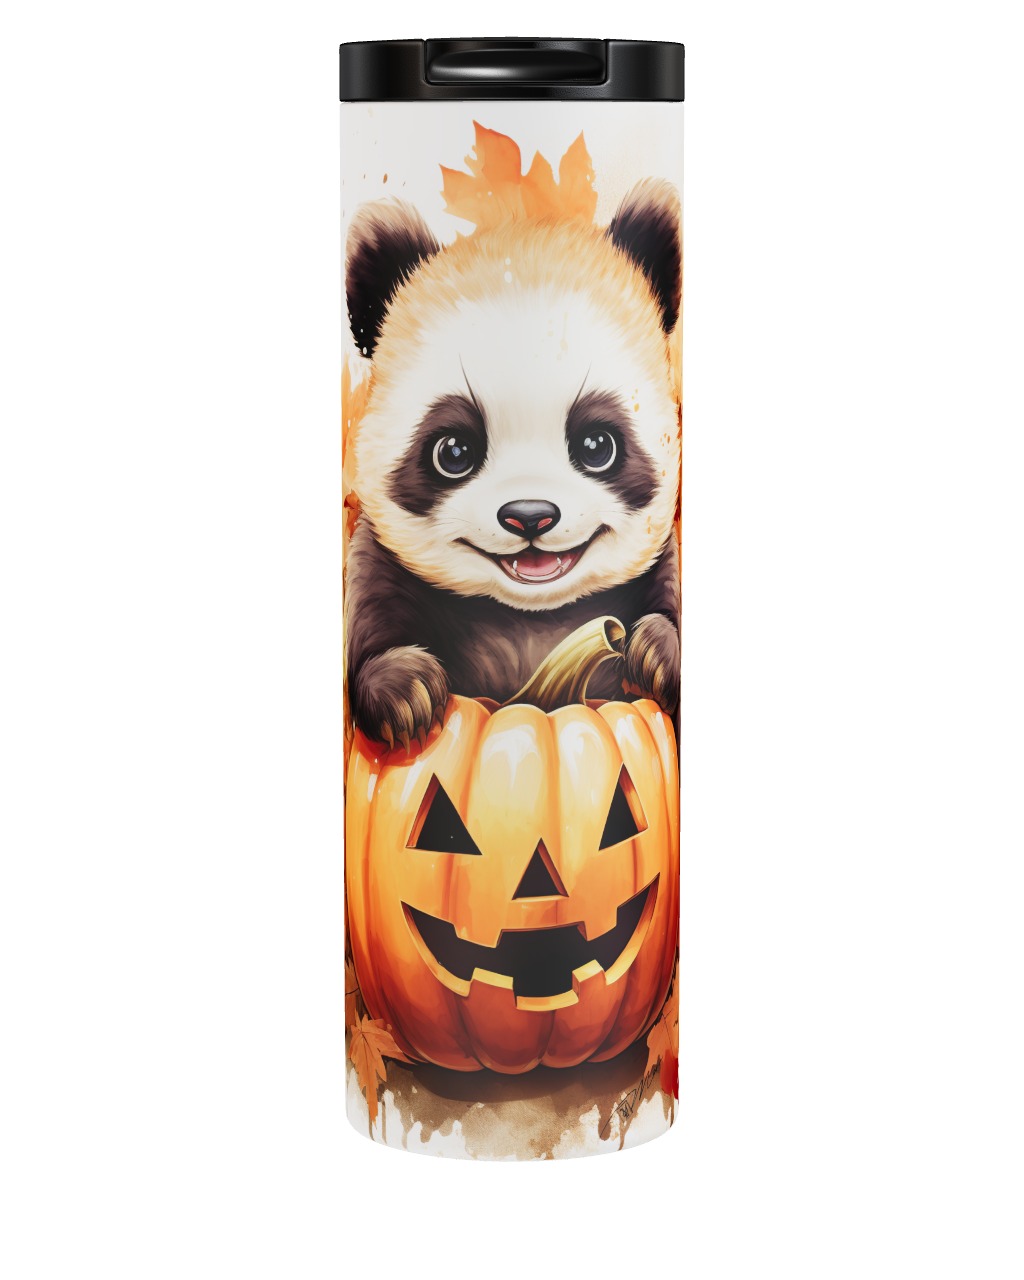 Autumn Panda Tumbler